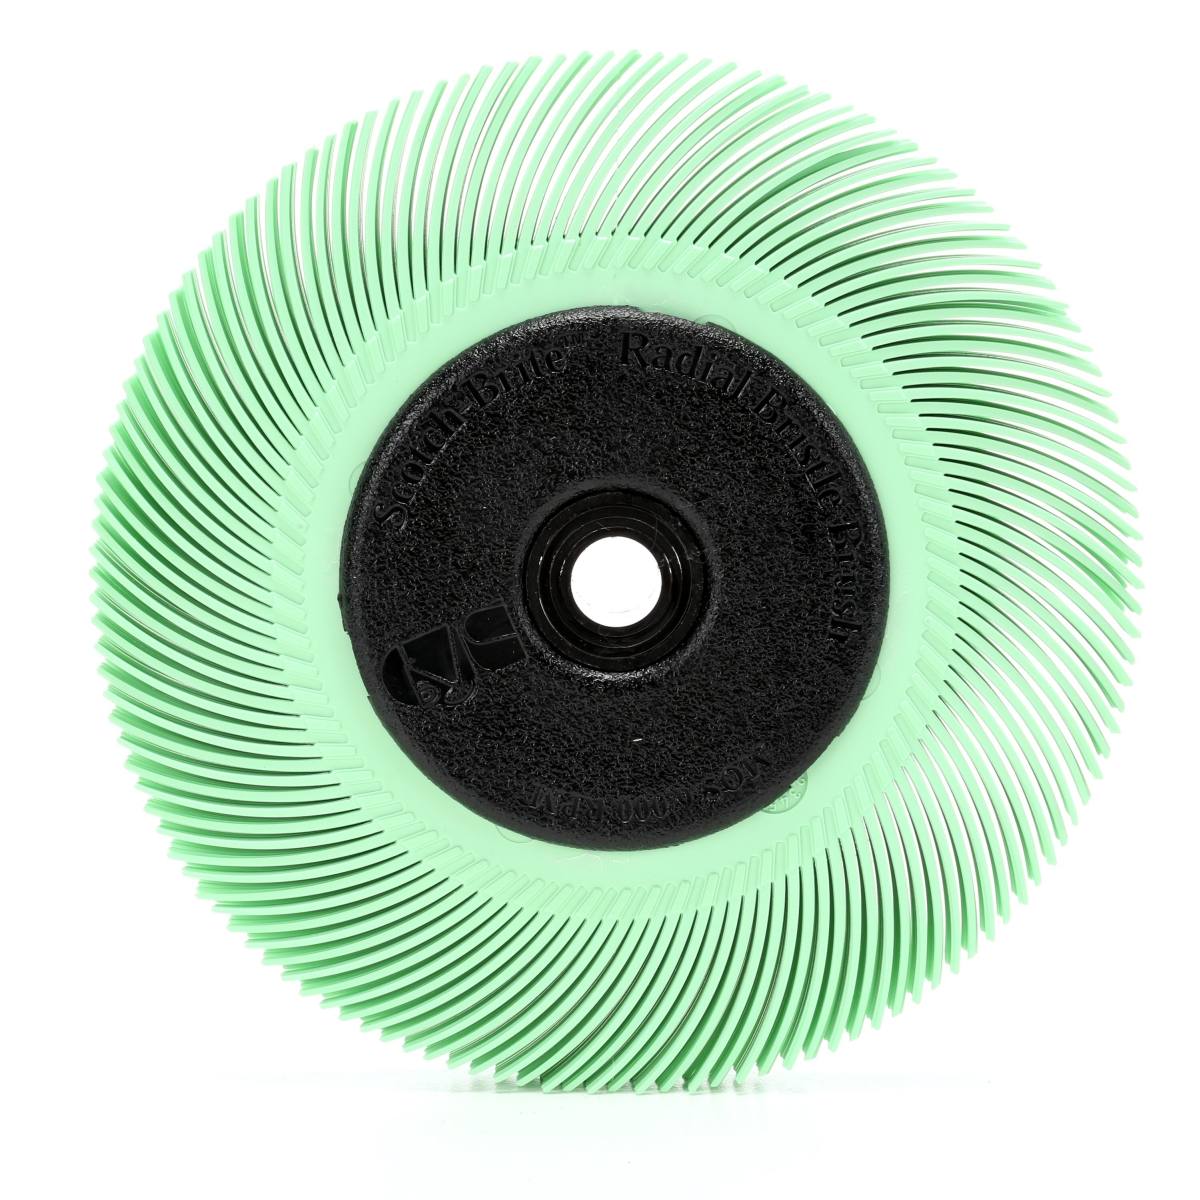 3M Scotch-Brite Radial Bristle Disc BB-ZB mit Flansch, grün, 152,4 mm, 1 Micron, Typ C #33217 (60200)